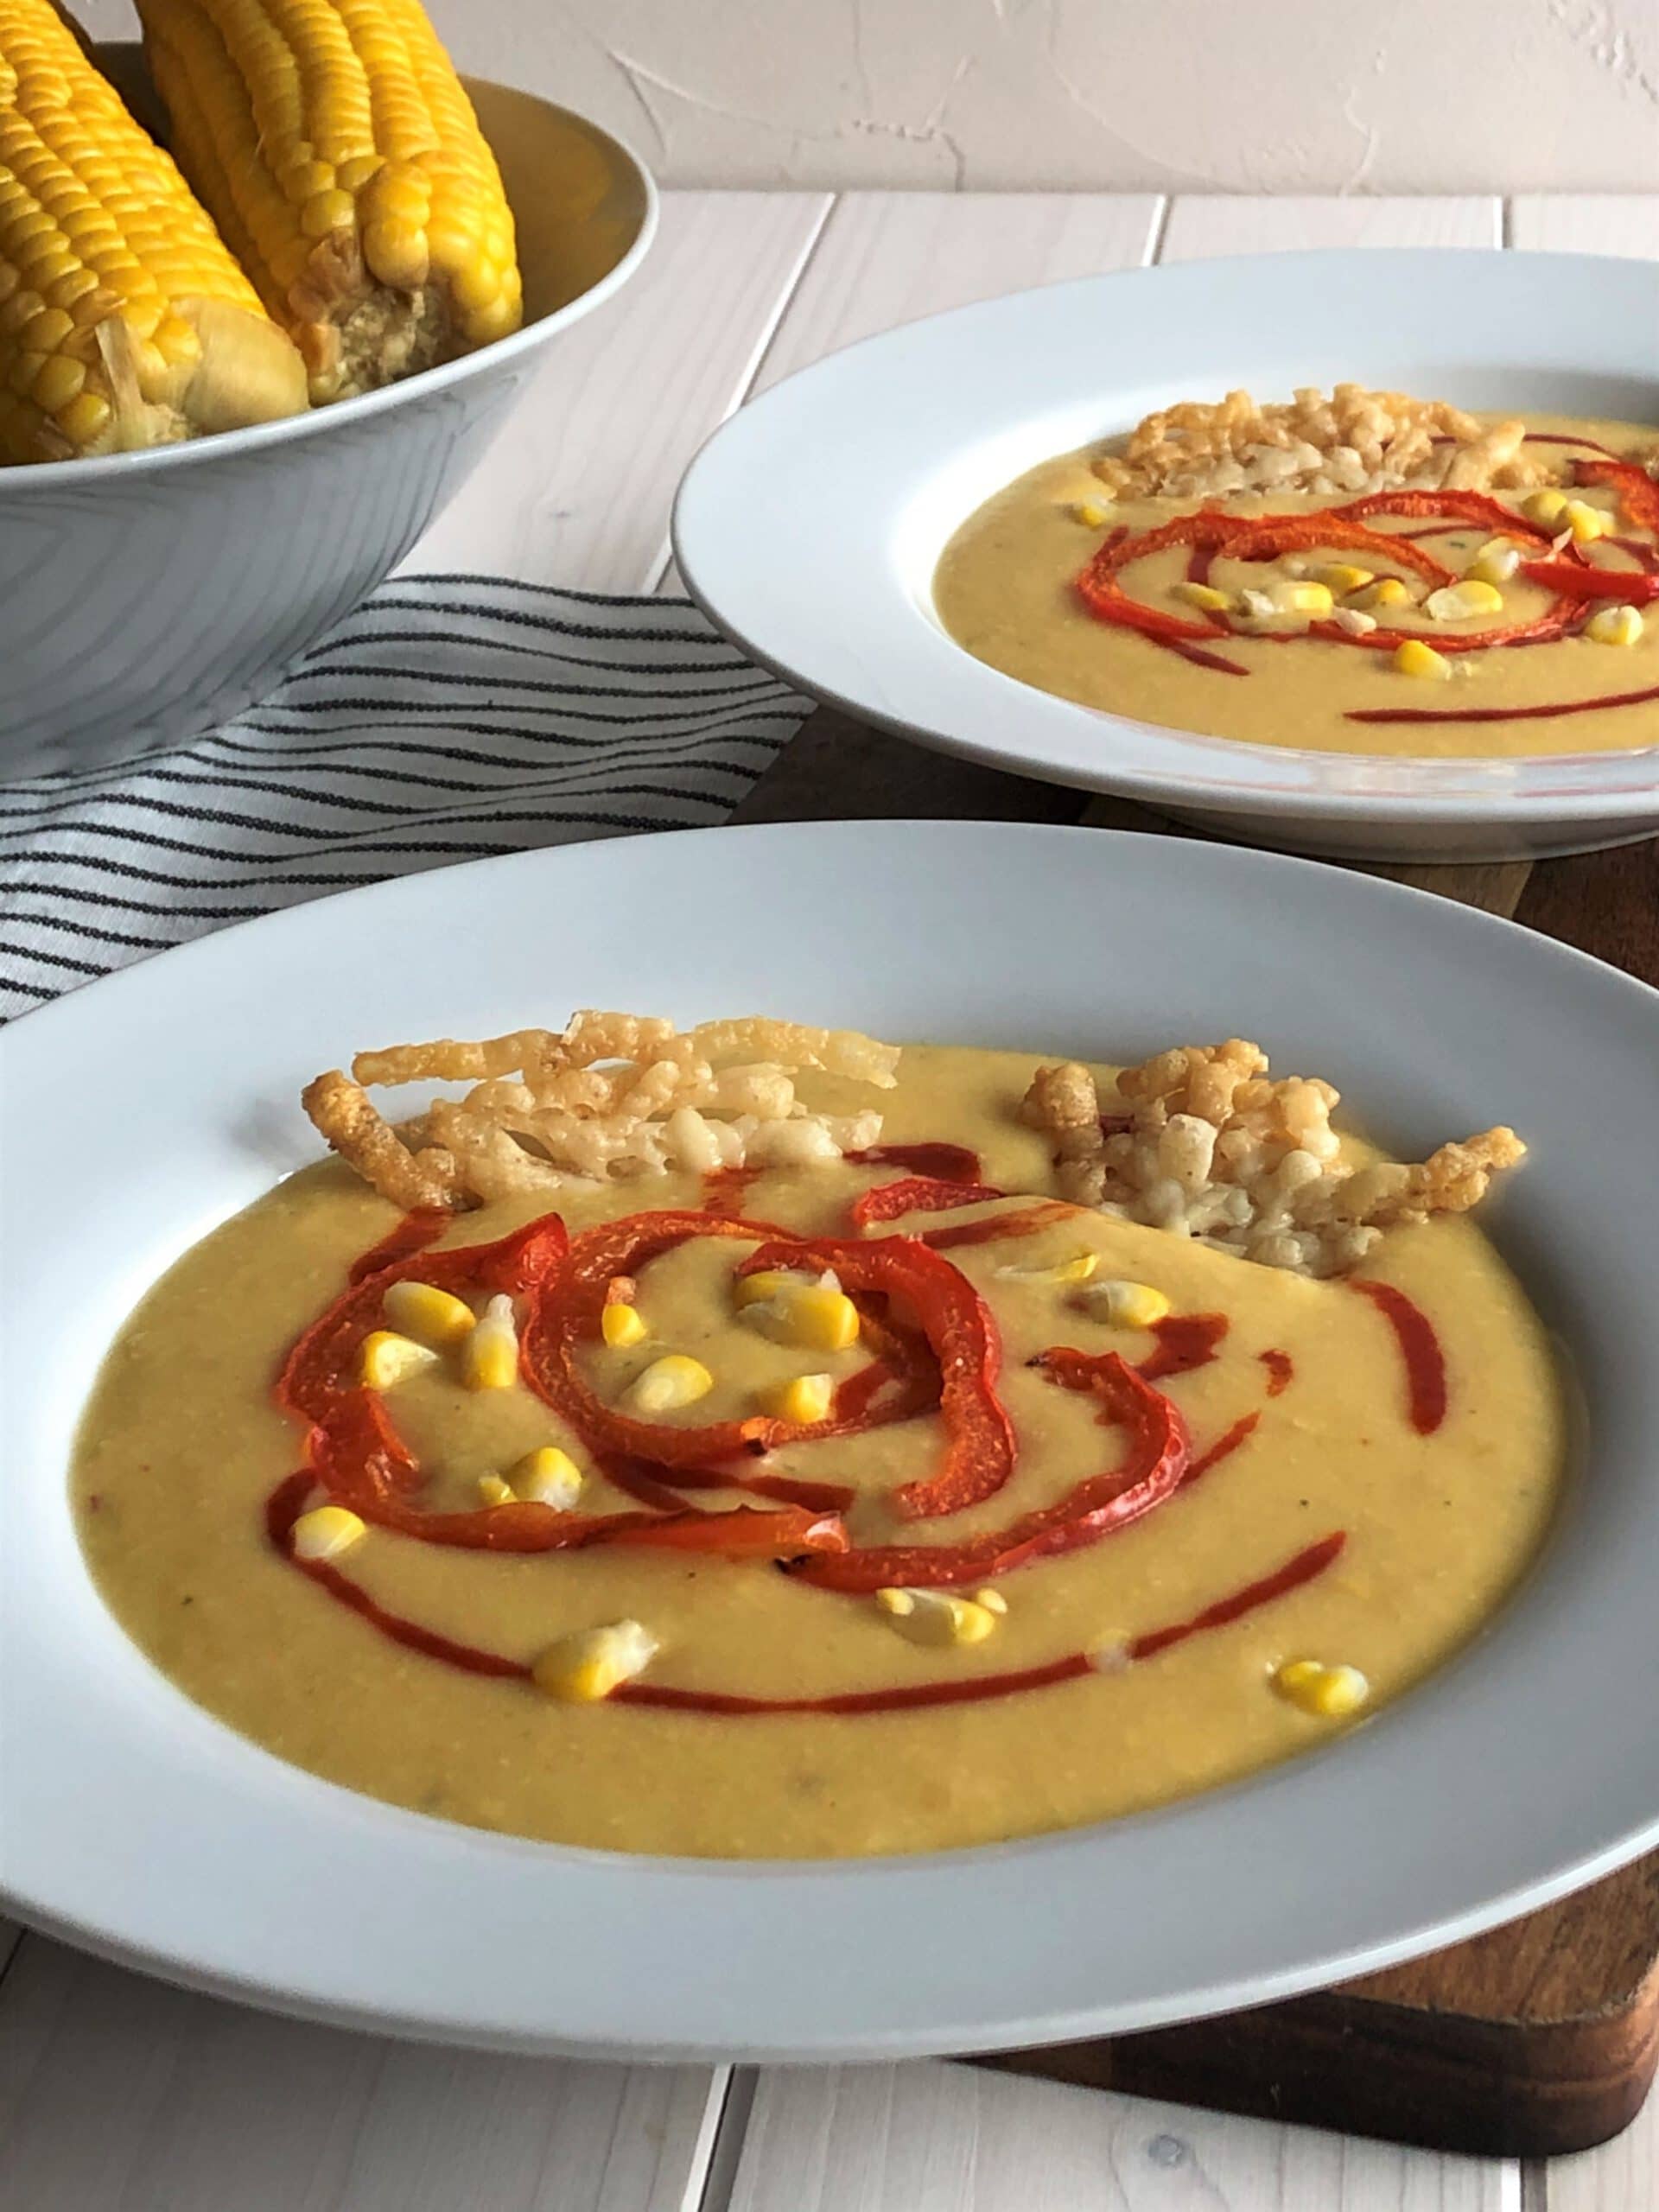 Maissuppe mit gegrillter Paprika und Parmesan Plätzchen - Sparflämmchen